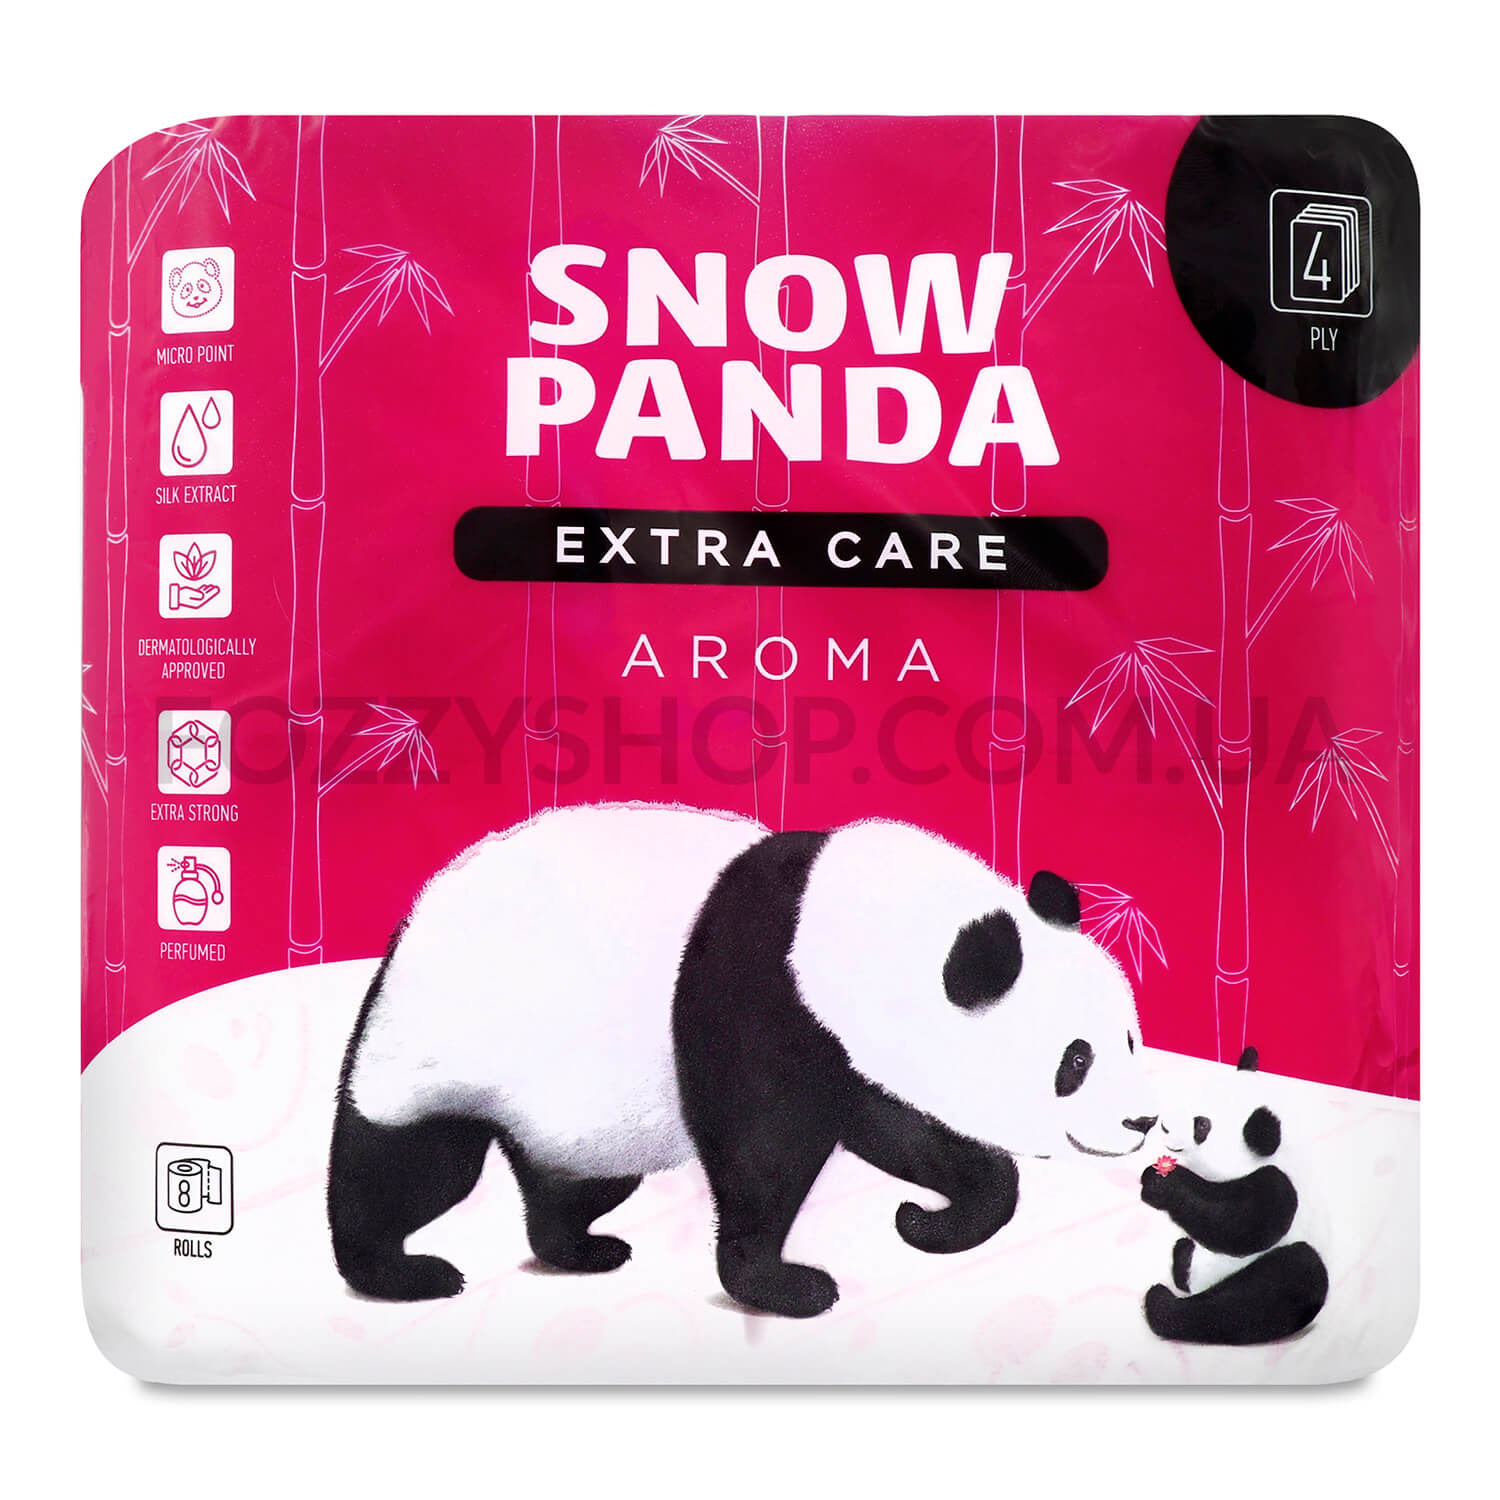 Бумага туалетная Сніжна панда Extra Care Aroma